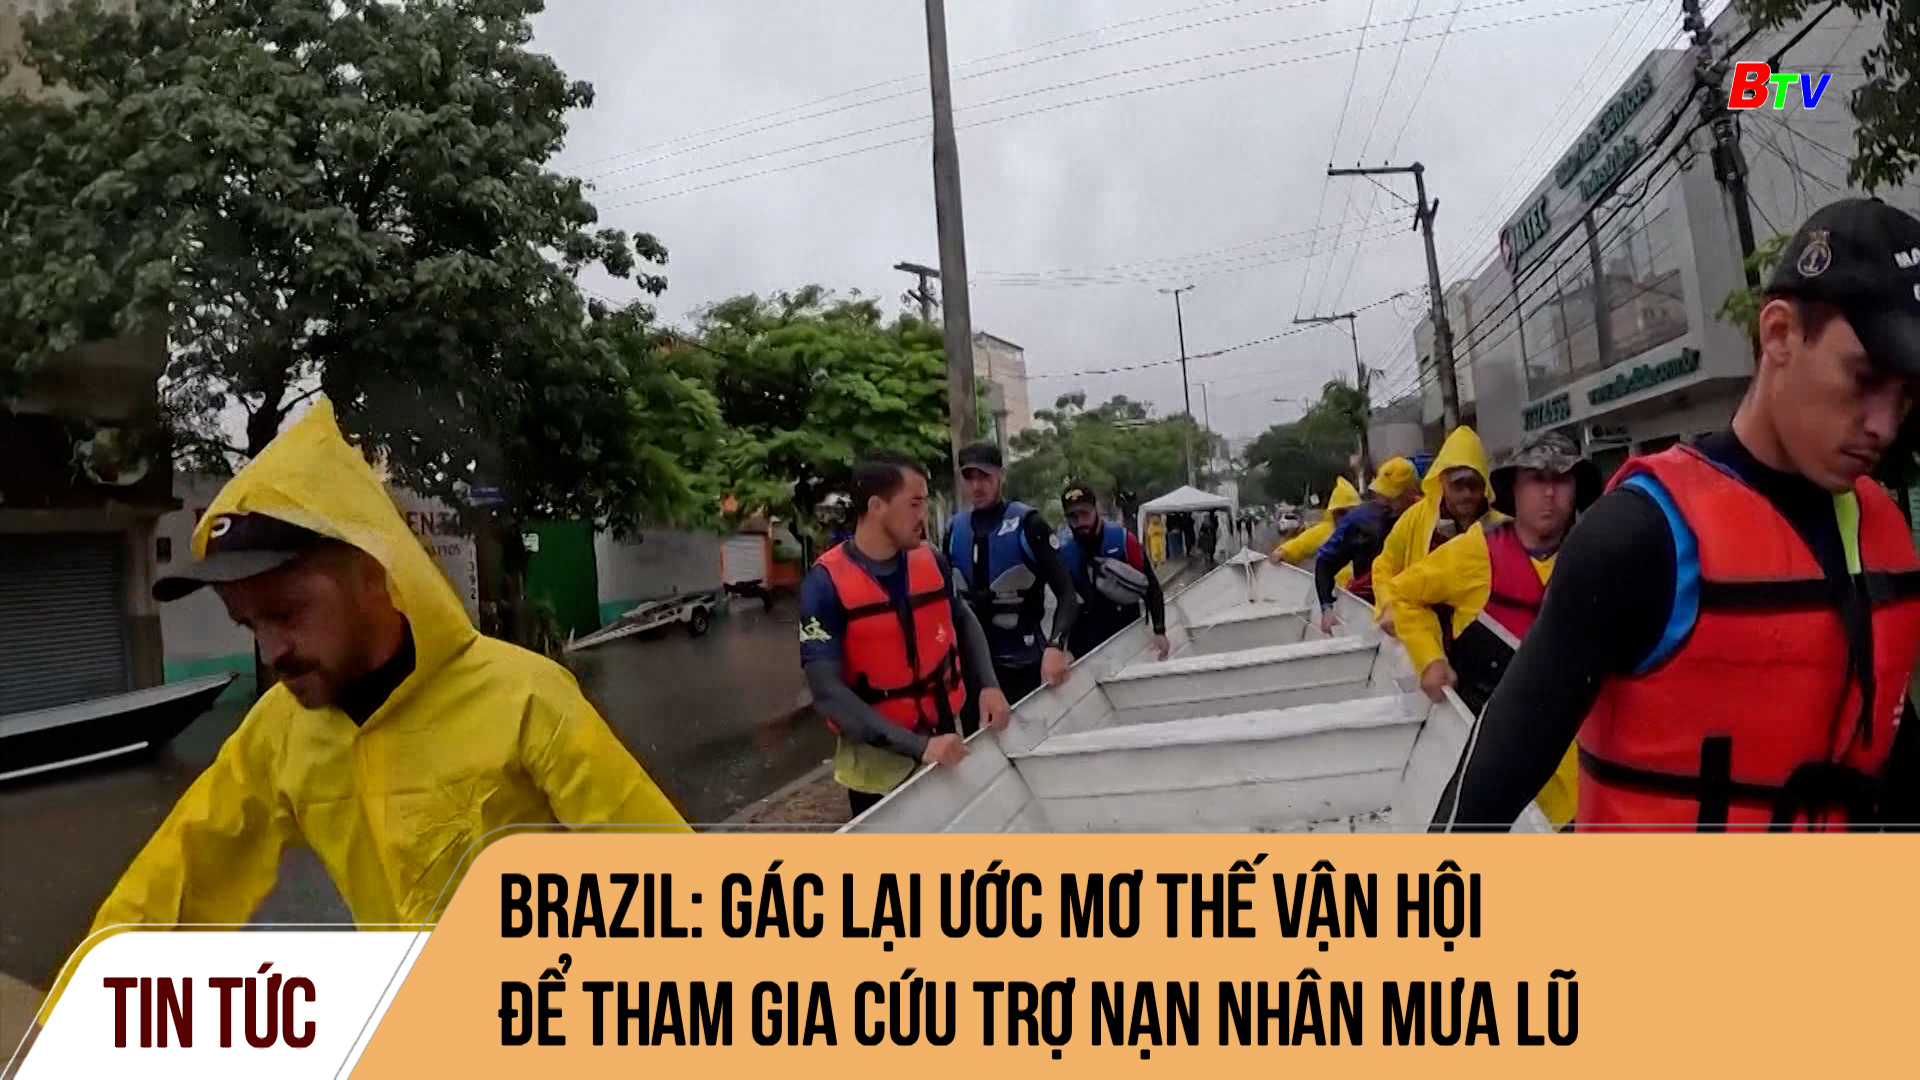 Brazil: gác lại ước mơ thế vận hội để tham gia cứu trợ nạn nhân mưa lũ